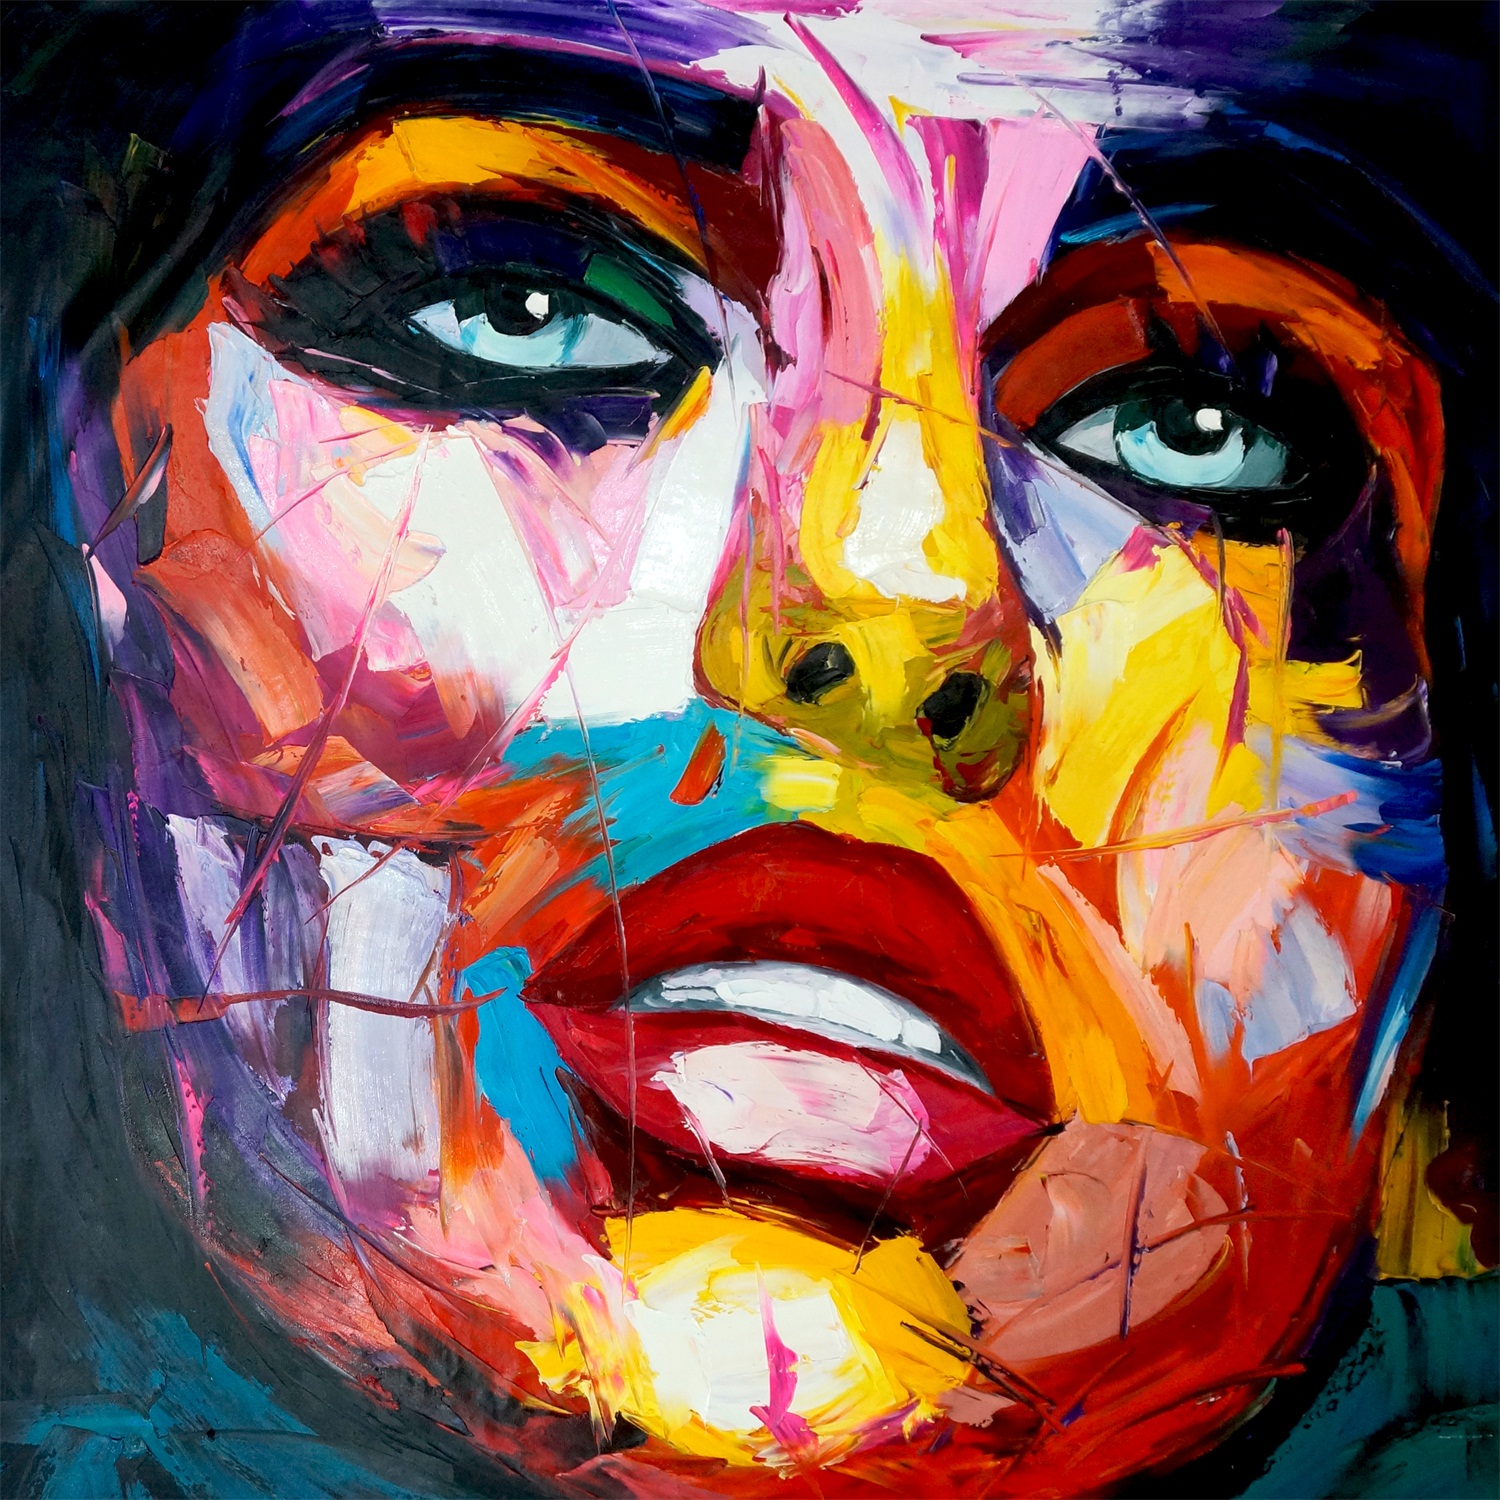 Schilderij "Kleurrijk vrouwengezicht" te koop @ Betaalbarekunst.nl. is handgeschilderd, en klaar op te hangen.